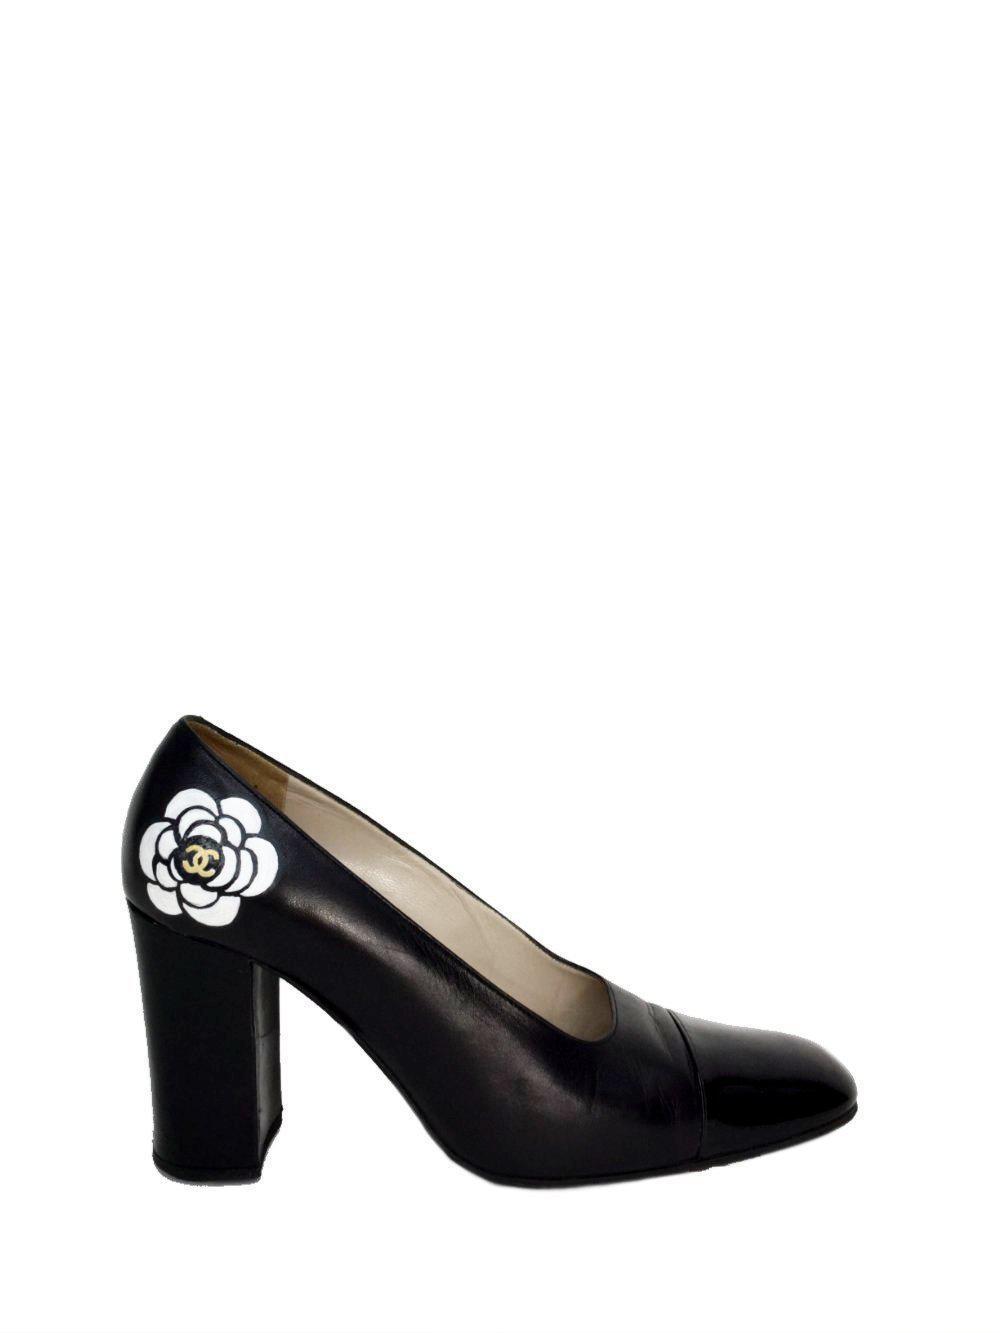 Vintage Cap-Toe Camellia Shoes Size 37-designer resale